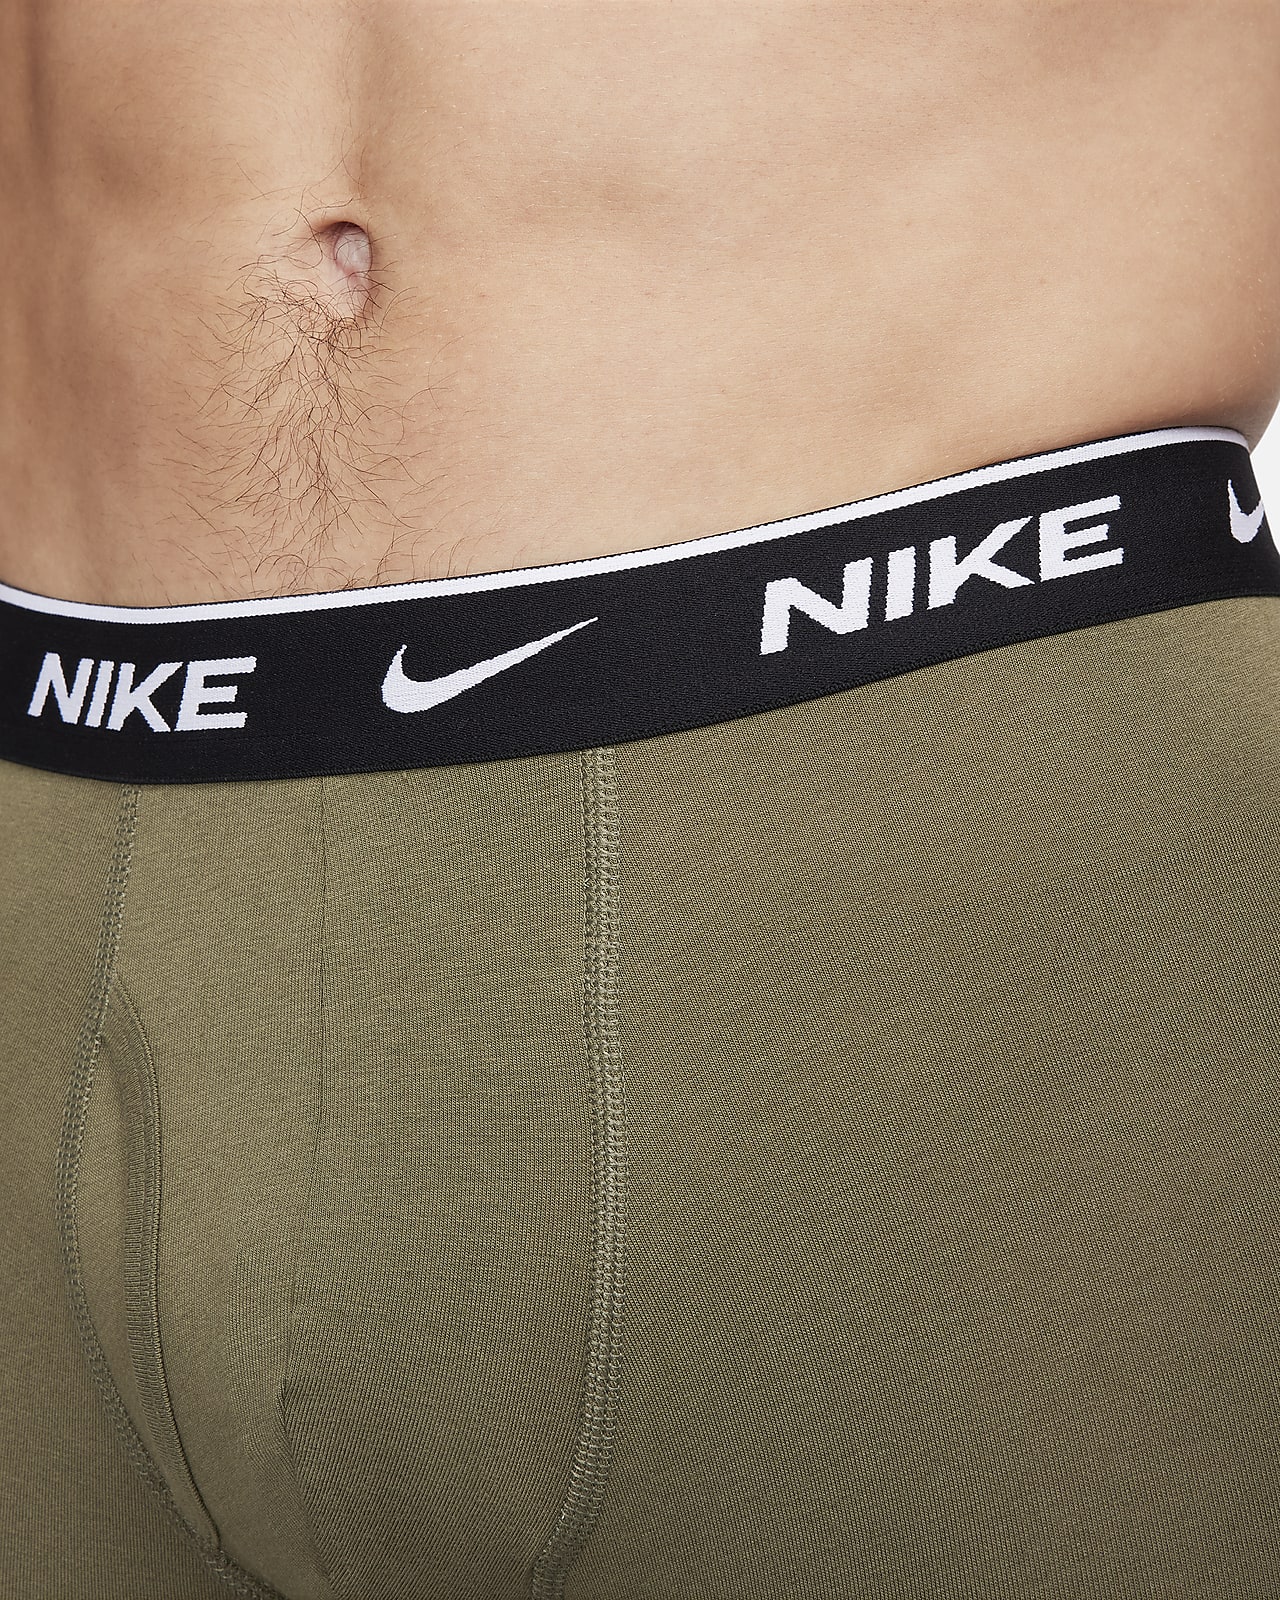 prins Investere skinke Nike Dri-FIT Essential Cotton Stretch Men's Boxer Briefs (3-Pack). Nike.com